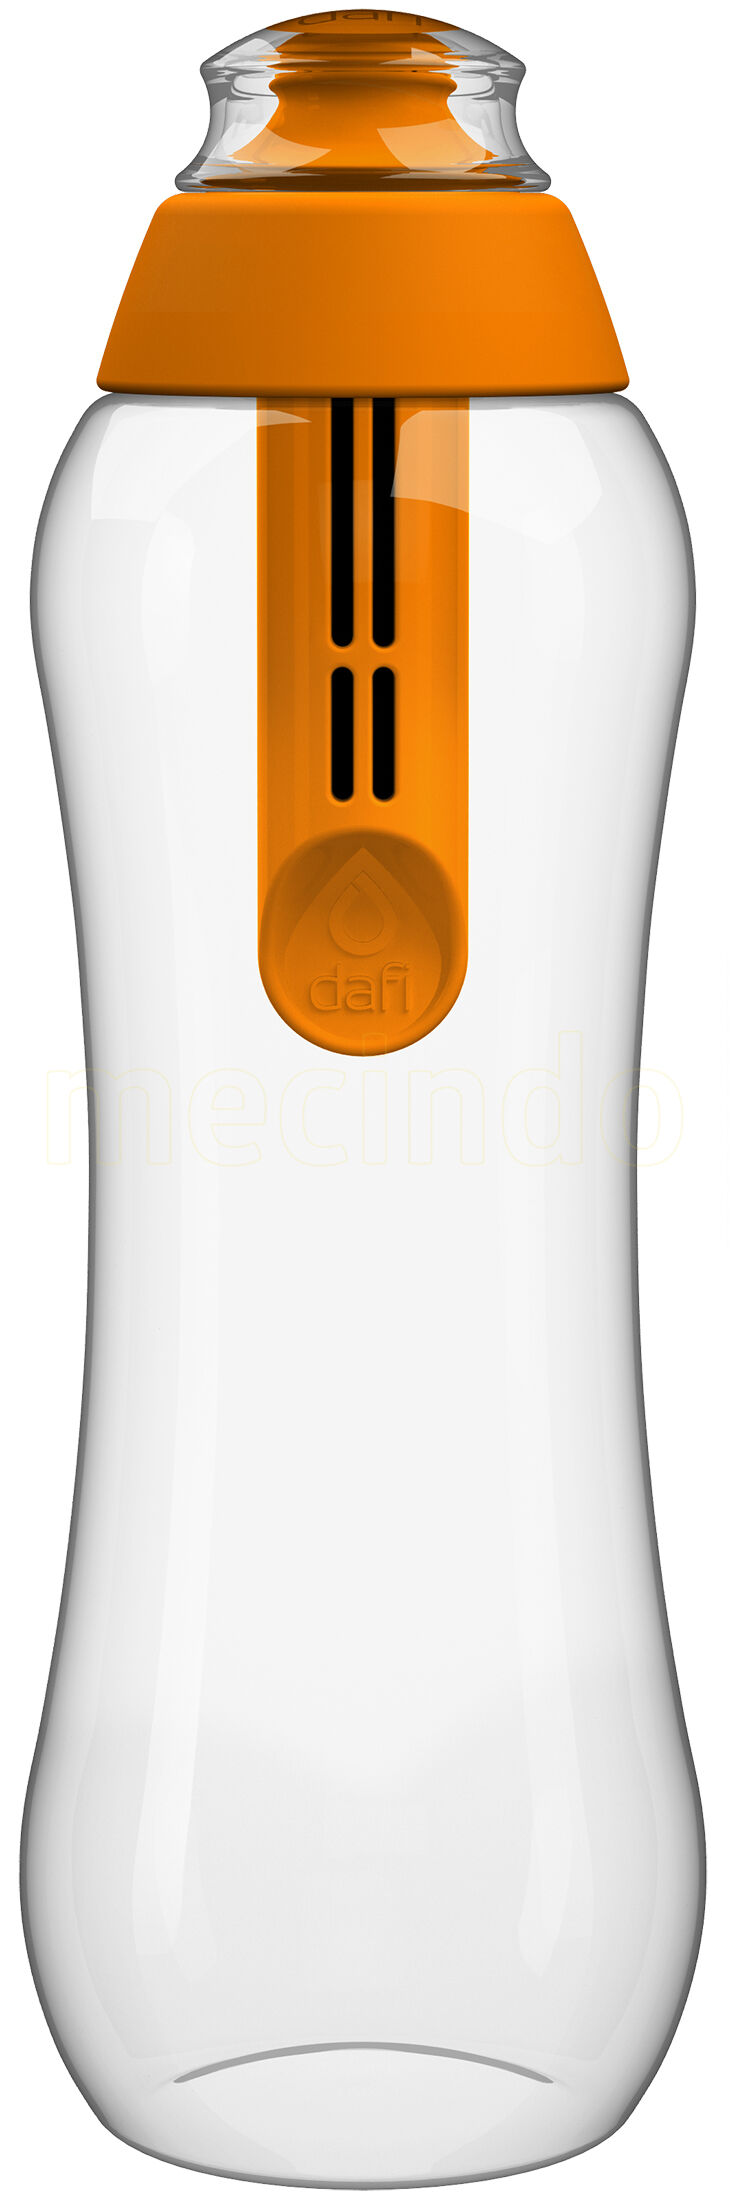 Dafi Filterflaske 0,5l Orange - 1 stk